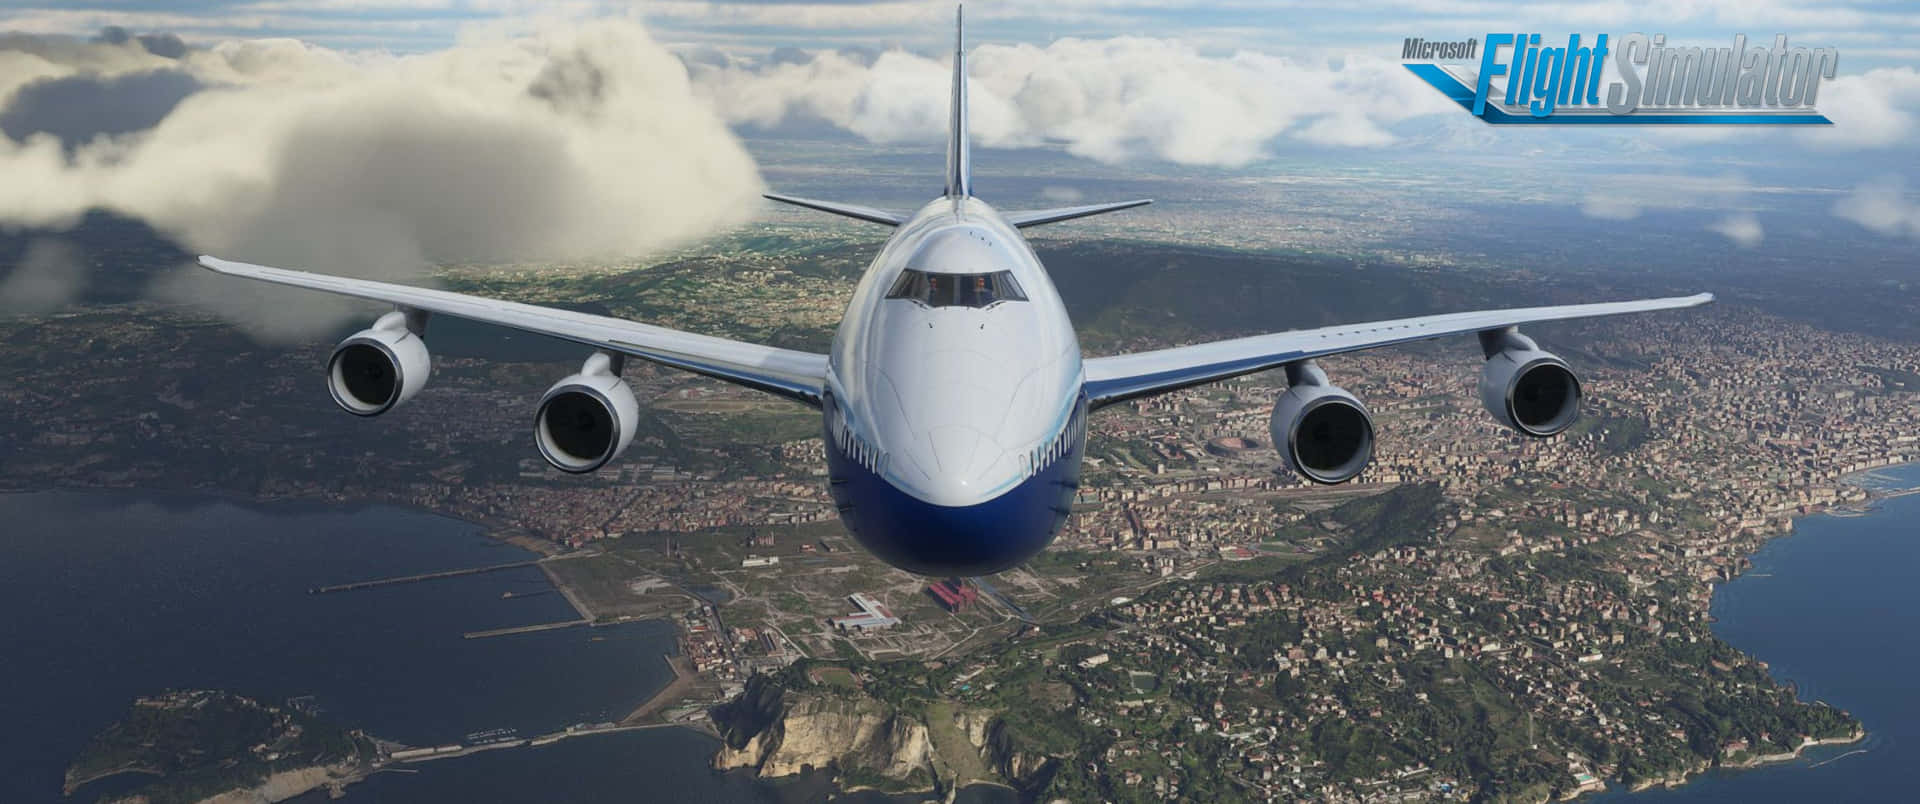 Spiccail Volo Tra I Cieli Con Microsoft Flight Simulator